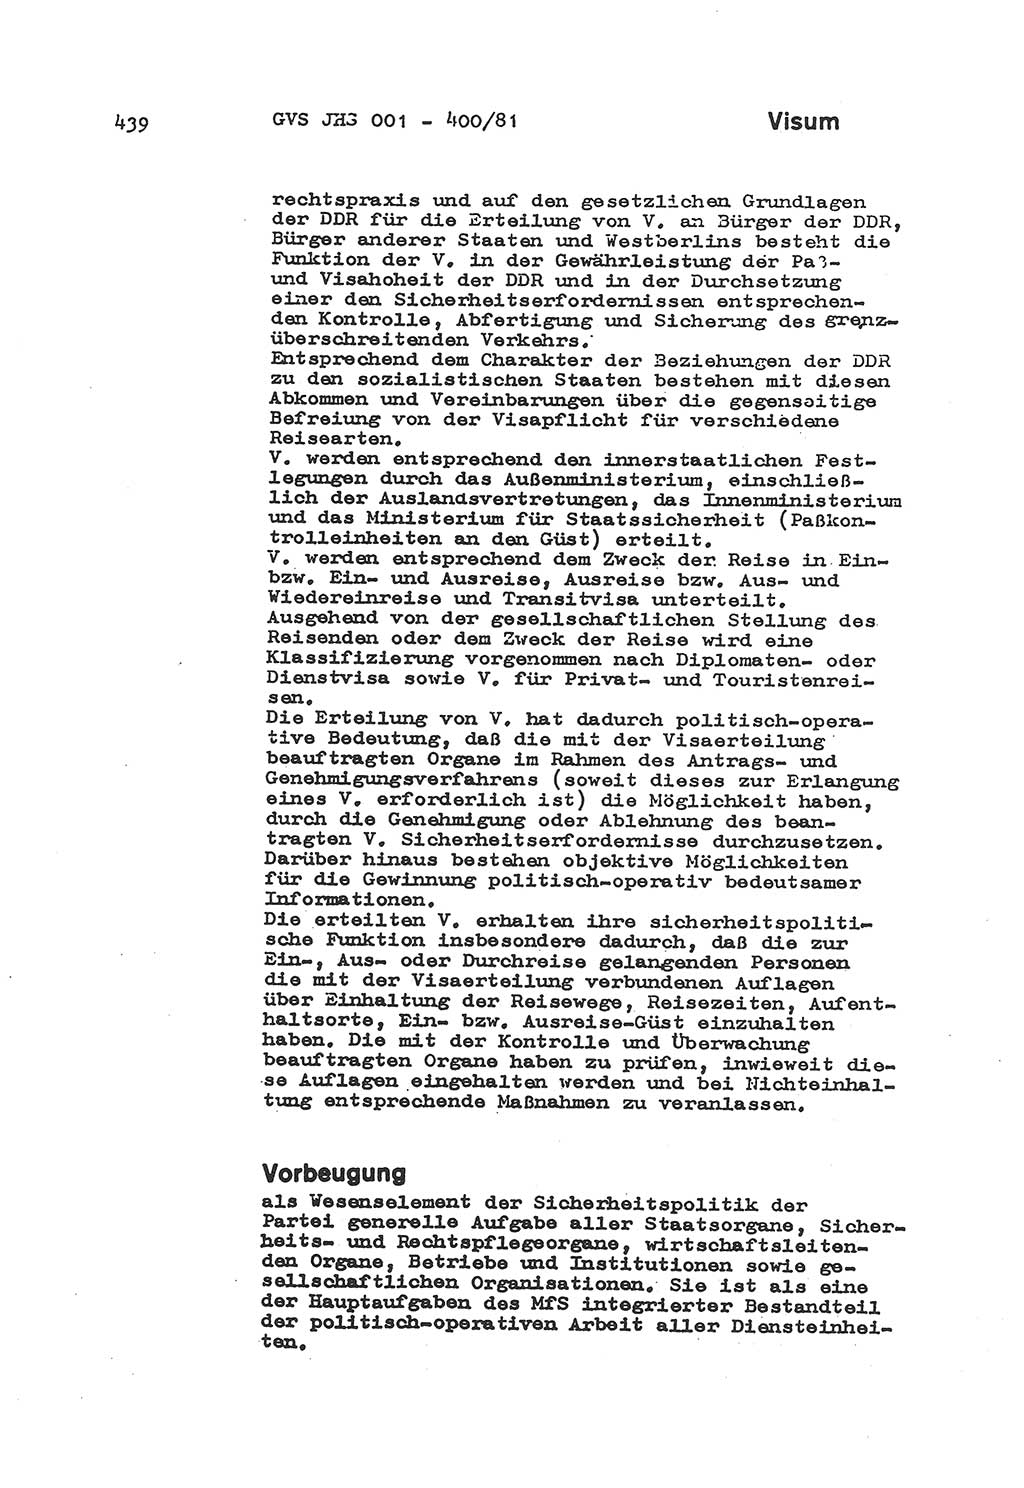 Wörterbuch der politisch-operativen Arbeit, Ministerium für Staatssicherheit (MfS) [Deutsche Demokratische Republik (DDR)], Juristische Hochschule (JHS), Geheime Verschlußsache (GVS) o001-400/81, Potsdam 1985, Blatt 439 (Wb. pol.-op. Arb. MfS DDR JHS GVS o001-400/81 1985, Bl. 439)